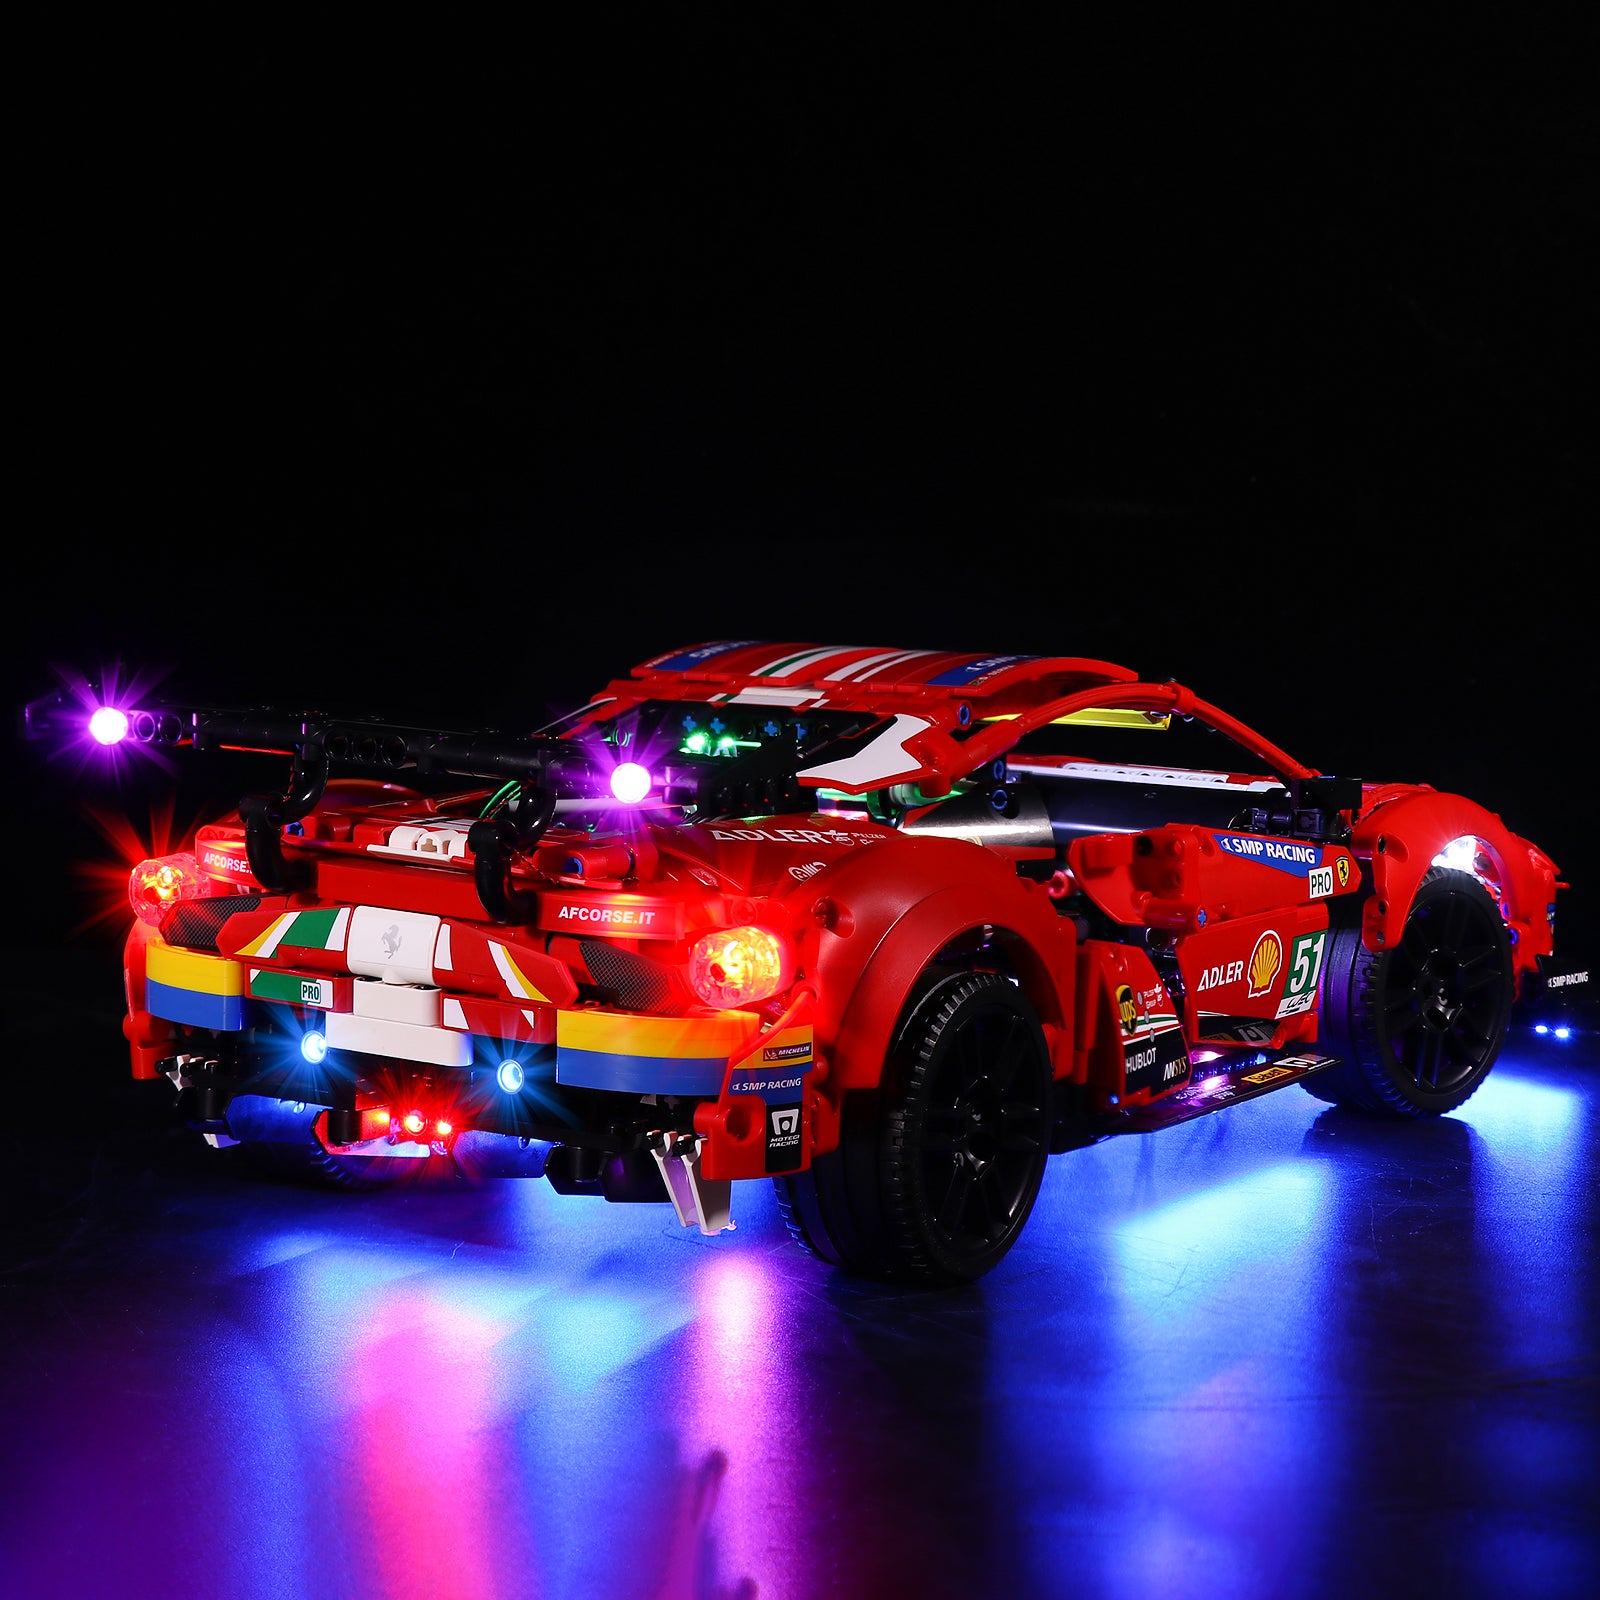 Kit d'éclairage BrickBling pour LEGO Ferrari 488 GTE « AF Corse #51 » 42125